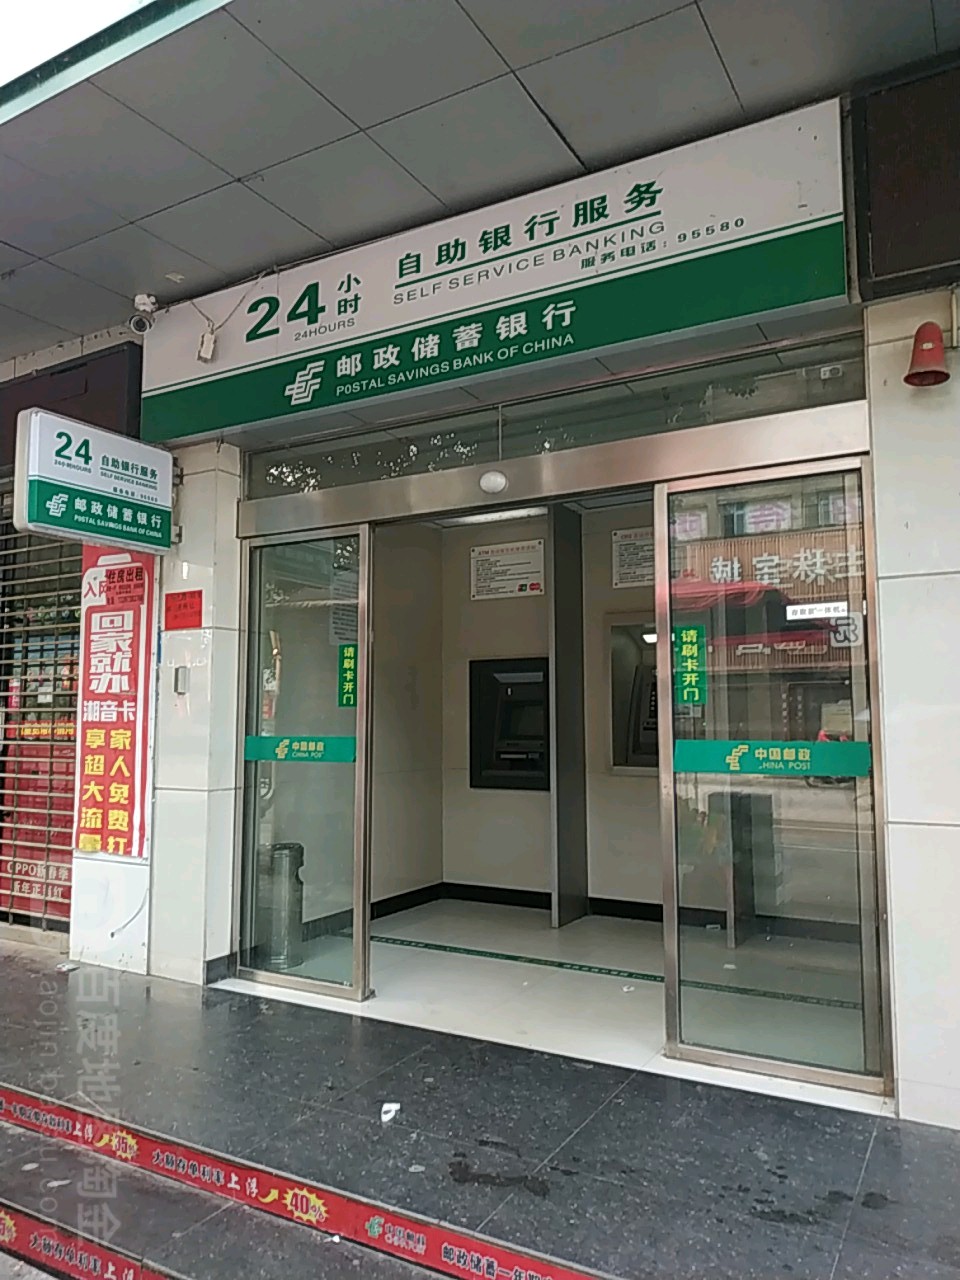 中國郵政儲蓄銀行24小時自助銀行(中心郵政儲蓄所)